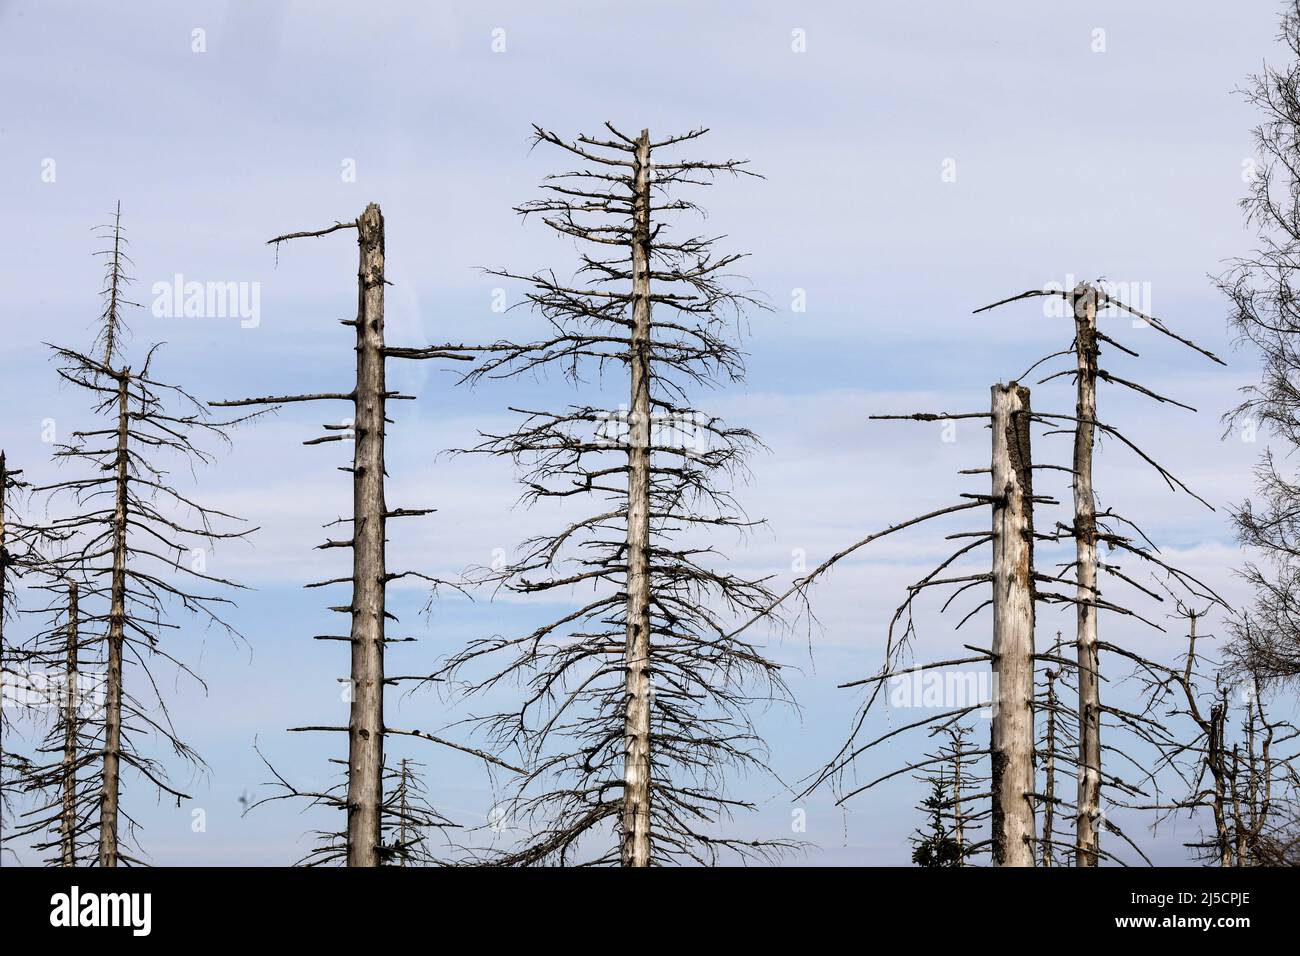 Oderbrueck, DEU, 19.07.2020 - Los spruces muertos, debido a la infestación por los escarabajos de la corteza. Las siluetas grises de los spruces muertos se elevan al cielo o se encuentran salvajemente encima de los demás. Pero aunque se pueden ver muchos árboles muertos, este bosque está tan vivo y dinámico como raramente antes. En el Parque Nacional de Harz no se combaten los escarabajos de corteza. Ayudan a convertir los bosques anteriormente manejados en bosques naturales y silvestres con una variedad de estructuras. [traducción automática] Foto de stock